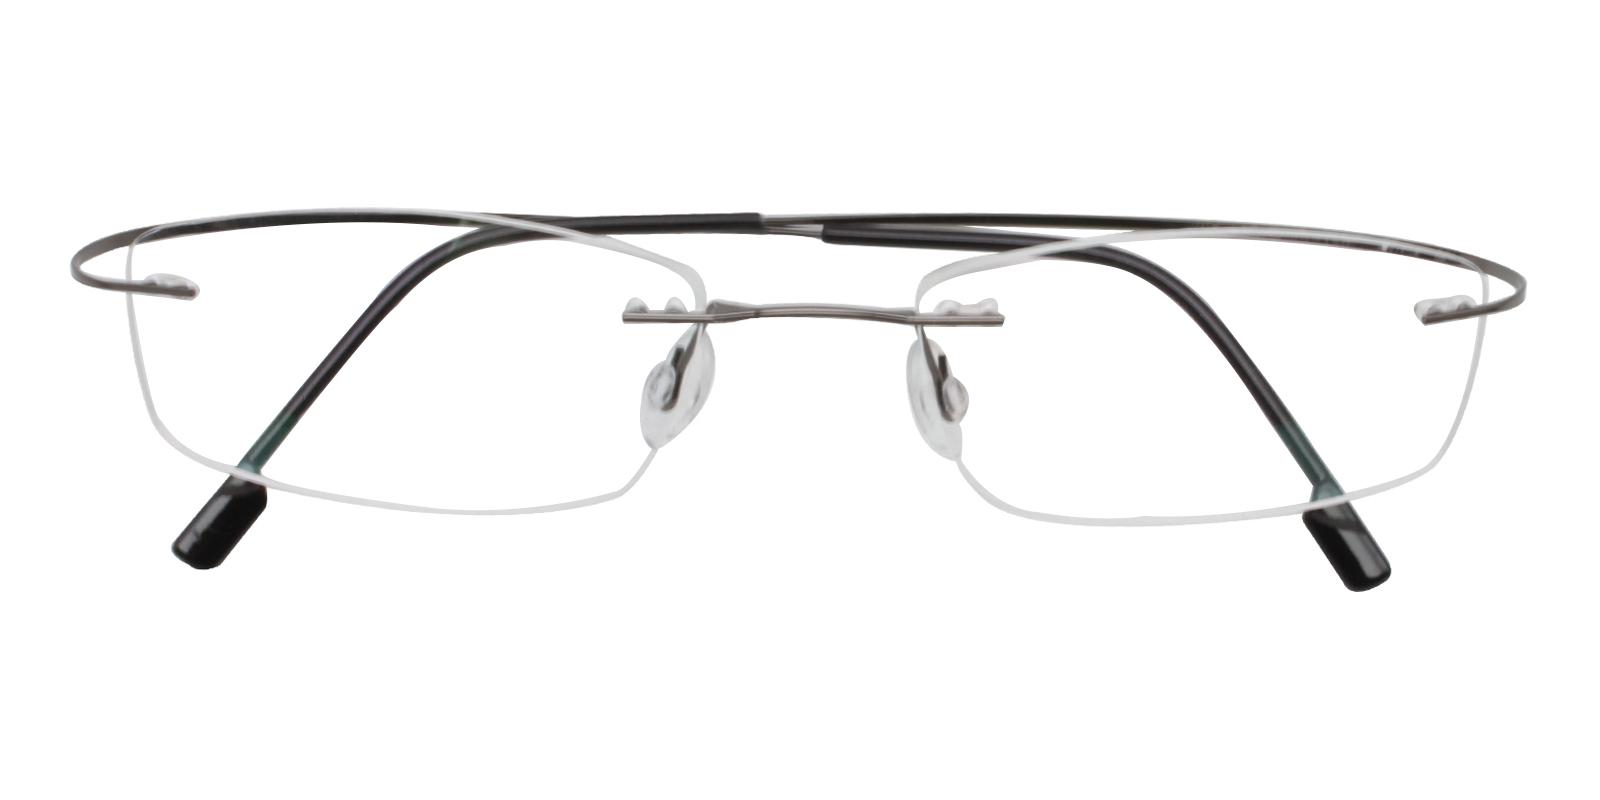 Olivia Gun Metal , Memory Eyeglasses , NosePads Frames from ABBE Glasses